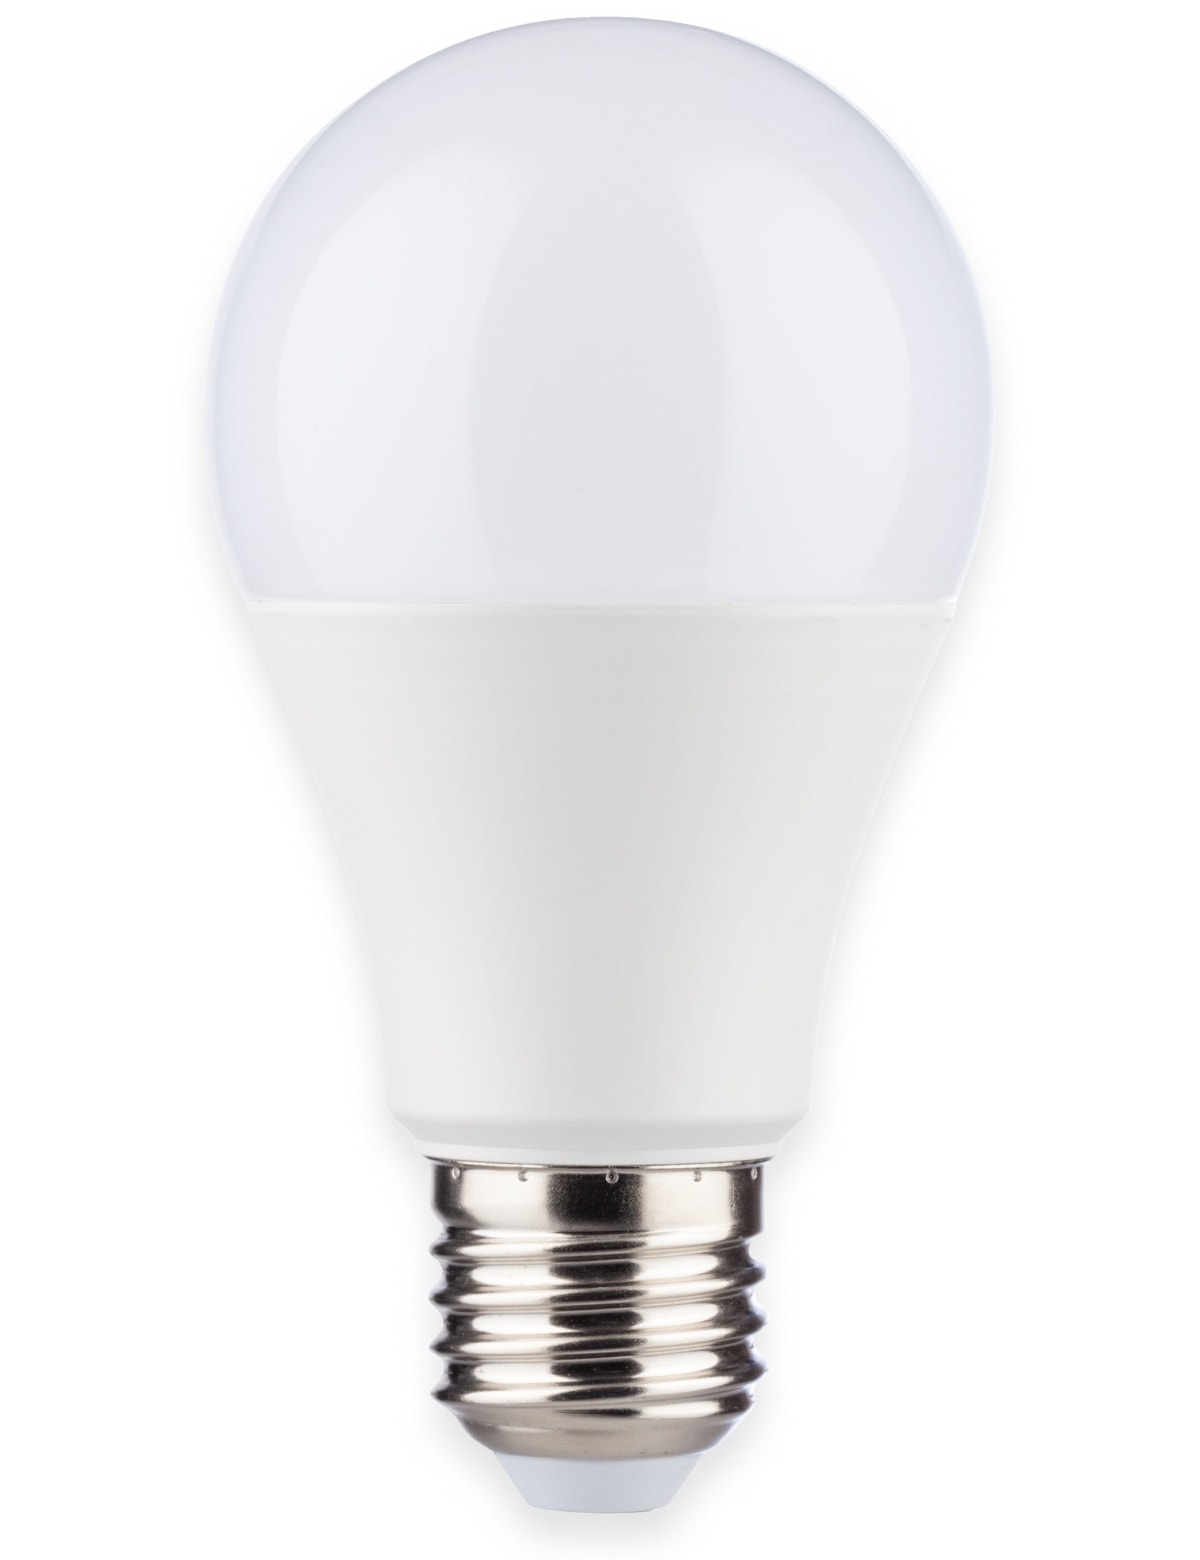 MÜLLER-LICHT LED-Lampe Birnenform, 400255, E27, EEK: F, 8.5W, 806 lm, 2700 K, matt, 4 Stück